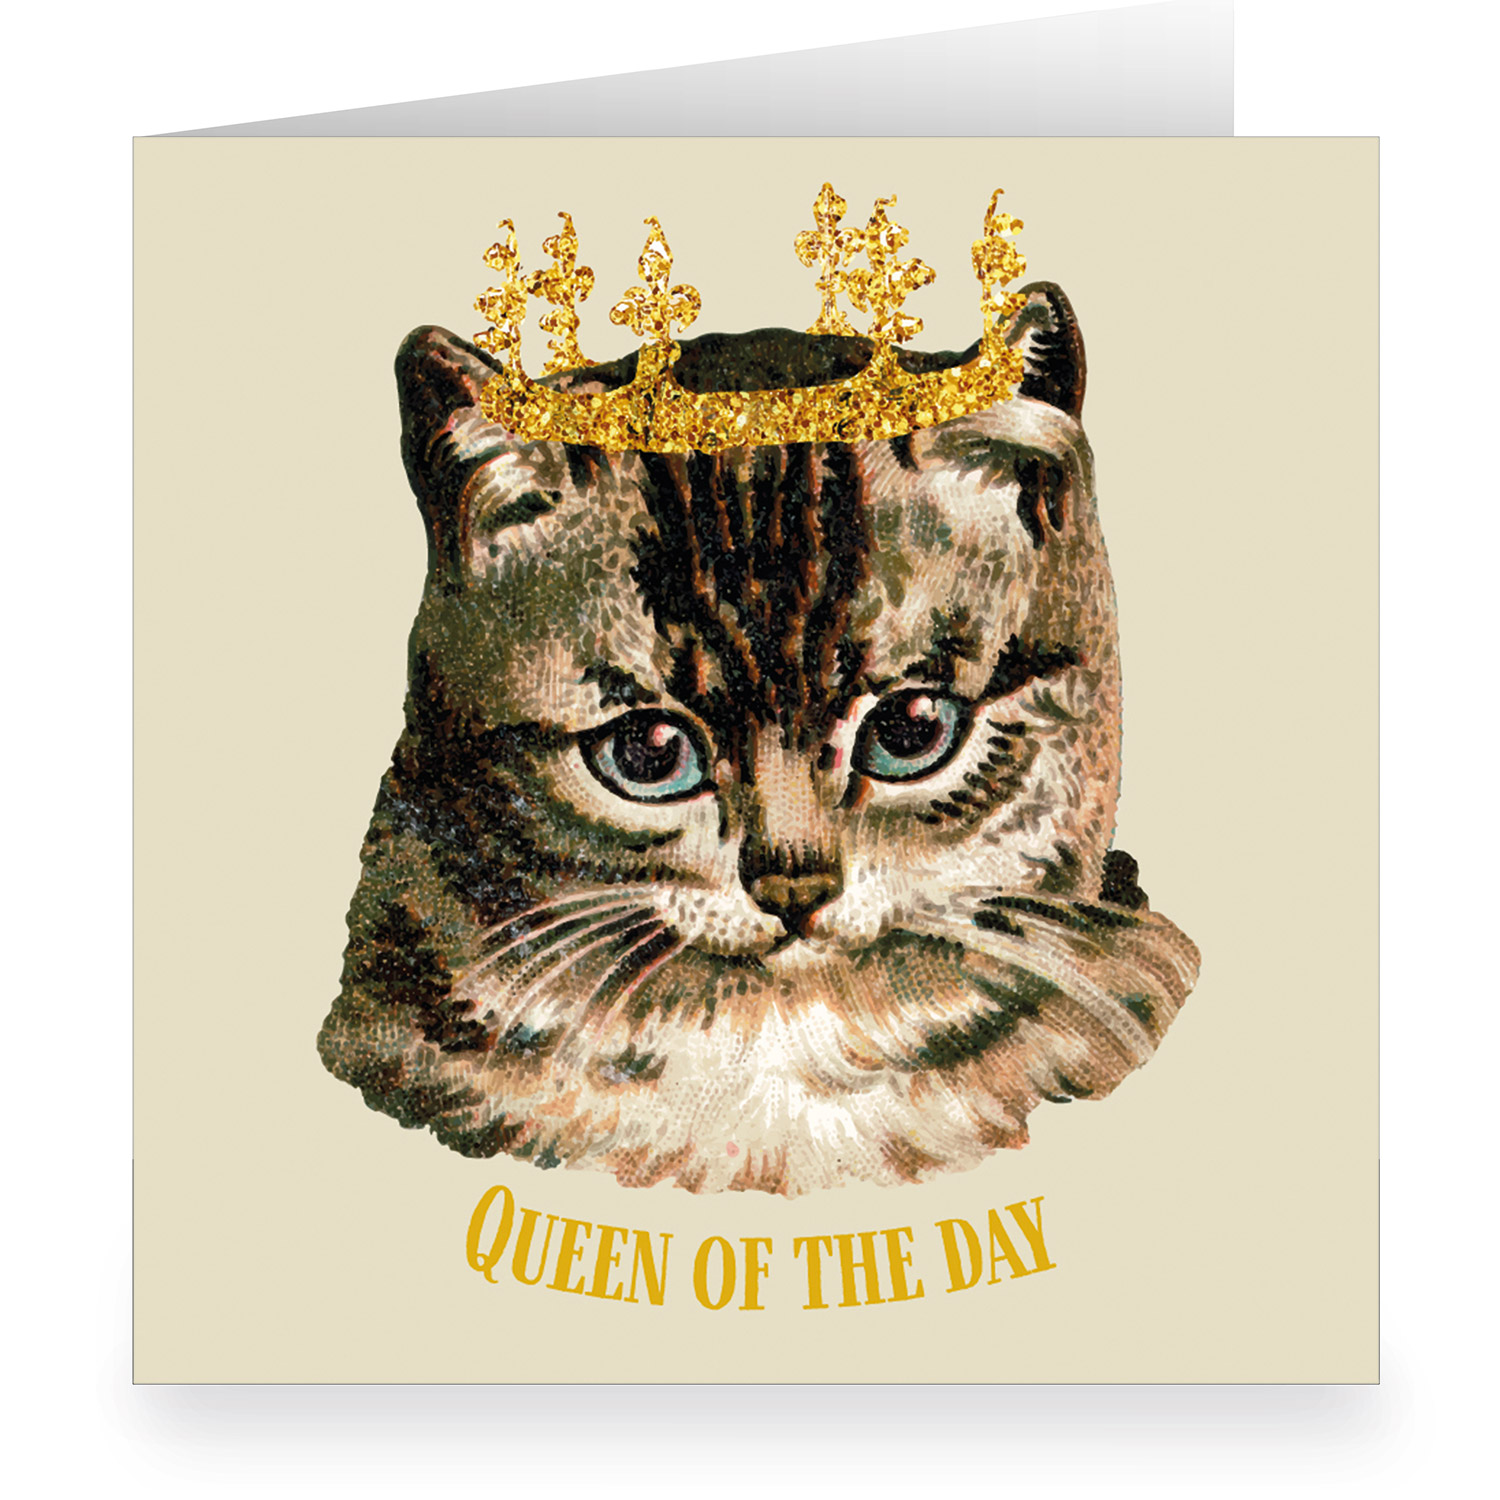 Süße XL Katzen Geburtstagskarte mit Vintage Katze und Krone: Queen of the Day 1 nachhaltig produzierte große Klapp Grußkarte inklusive Umschlag von Kartenkaufrausch.de made in germany mit viel Platz zum Unterschreiben